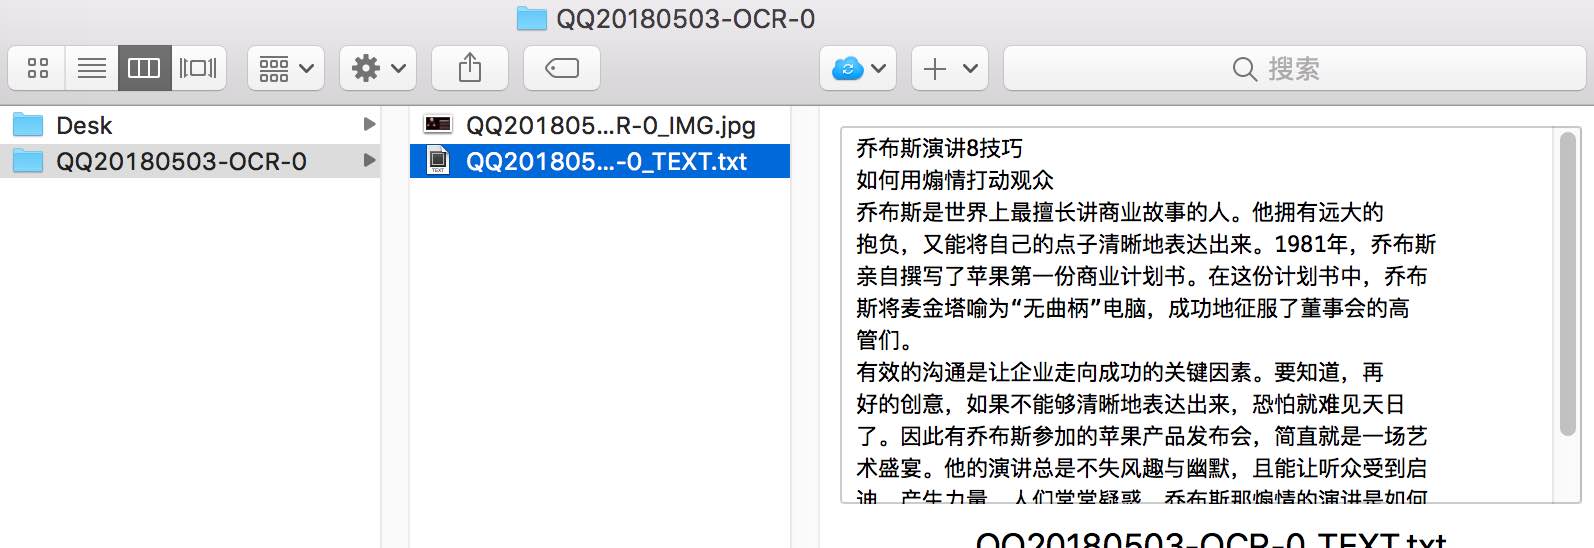 「图片转文字」识图功能现已接入Mac QQ